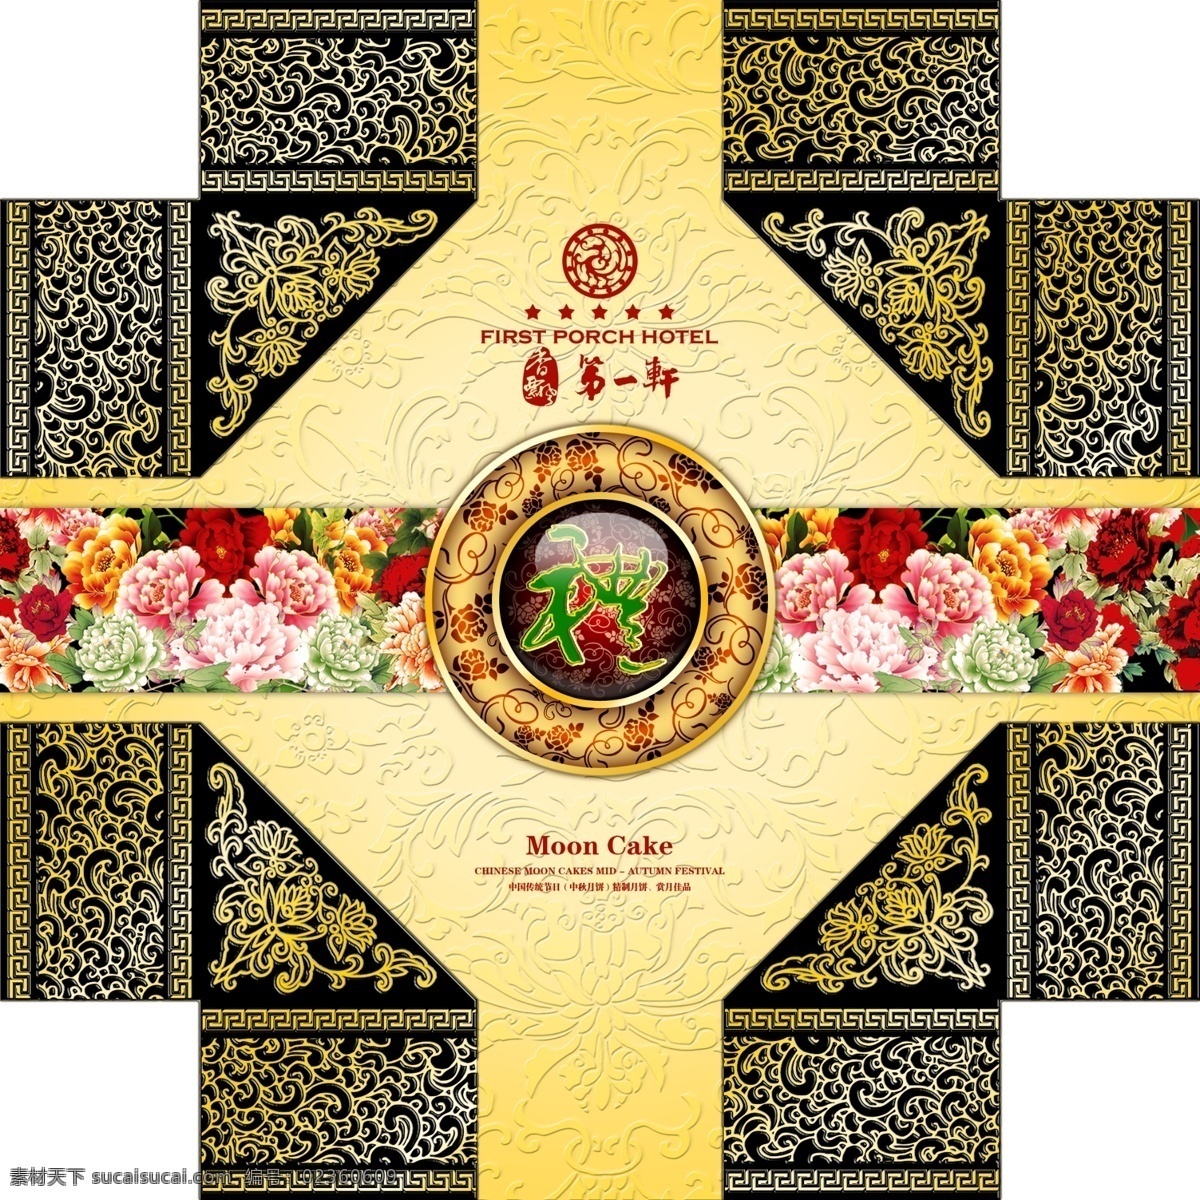 月饼 礼盒 包装设计 传统 中秋节 广告设计模板 源文件